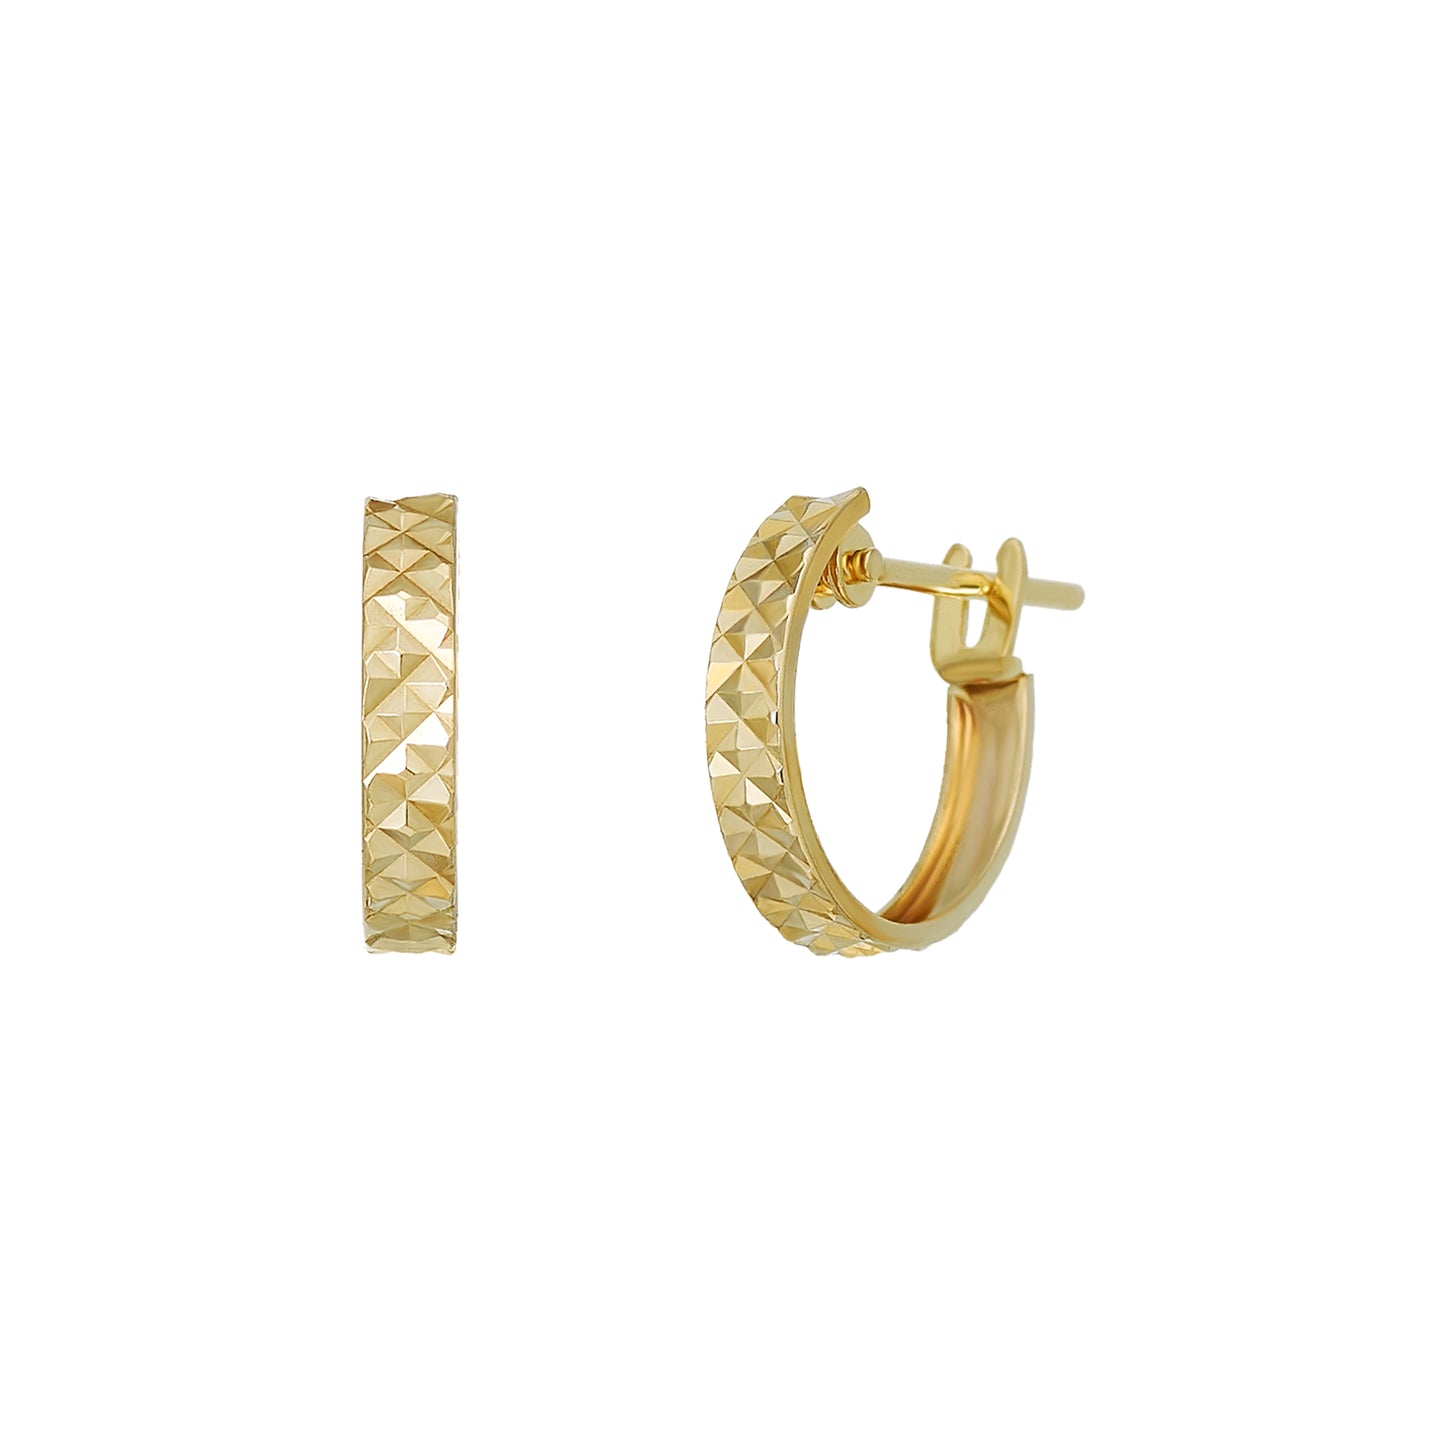 18K/10K Yellow Gold Pyramid Cut Hoop Earrings - Product Image